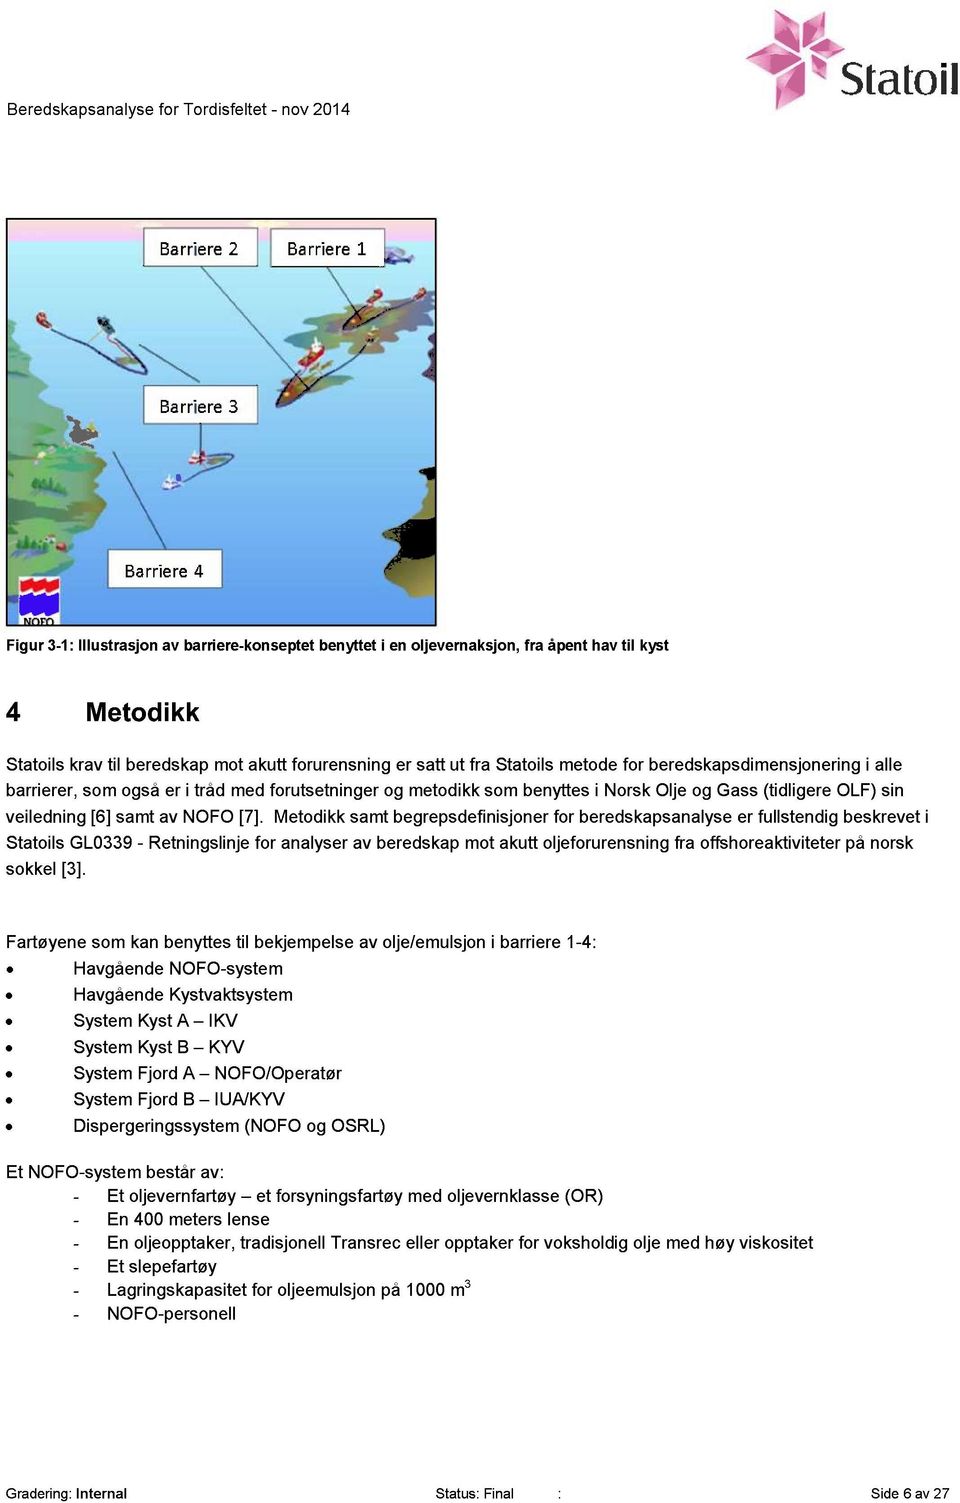 Metodikk samt begrepsdefinisjoner for beredskapsanalyse er fullstendig beskrevet i Statoils GL0339 - Retningslinje for analyser av beredskap mot akutt oljeforurensning fra offshoreaktiviteter på